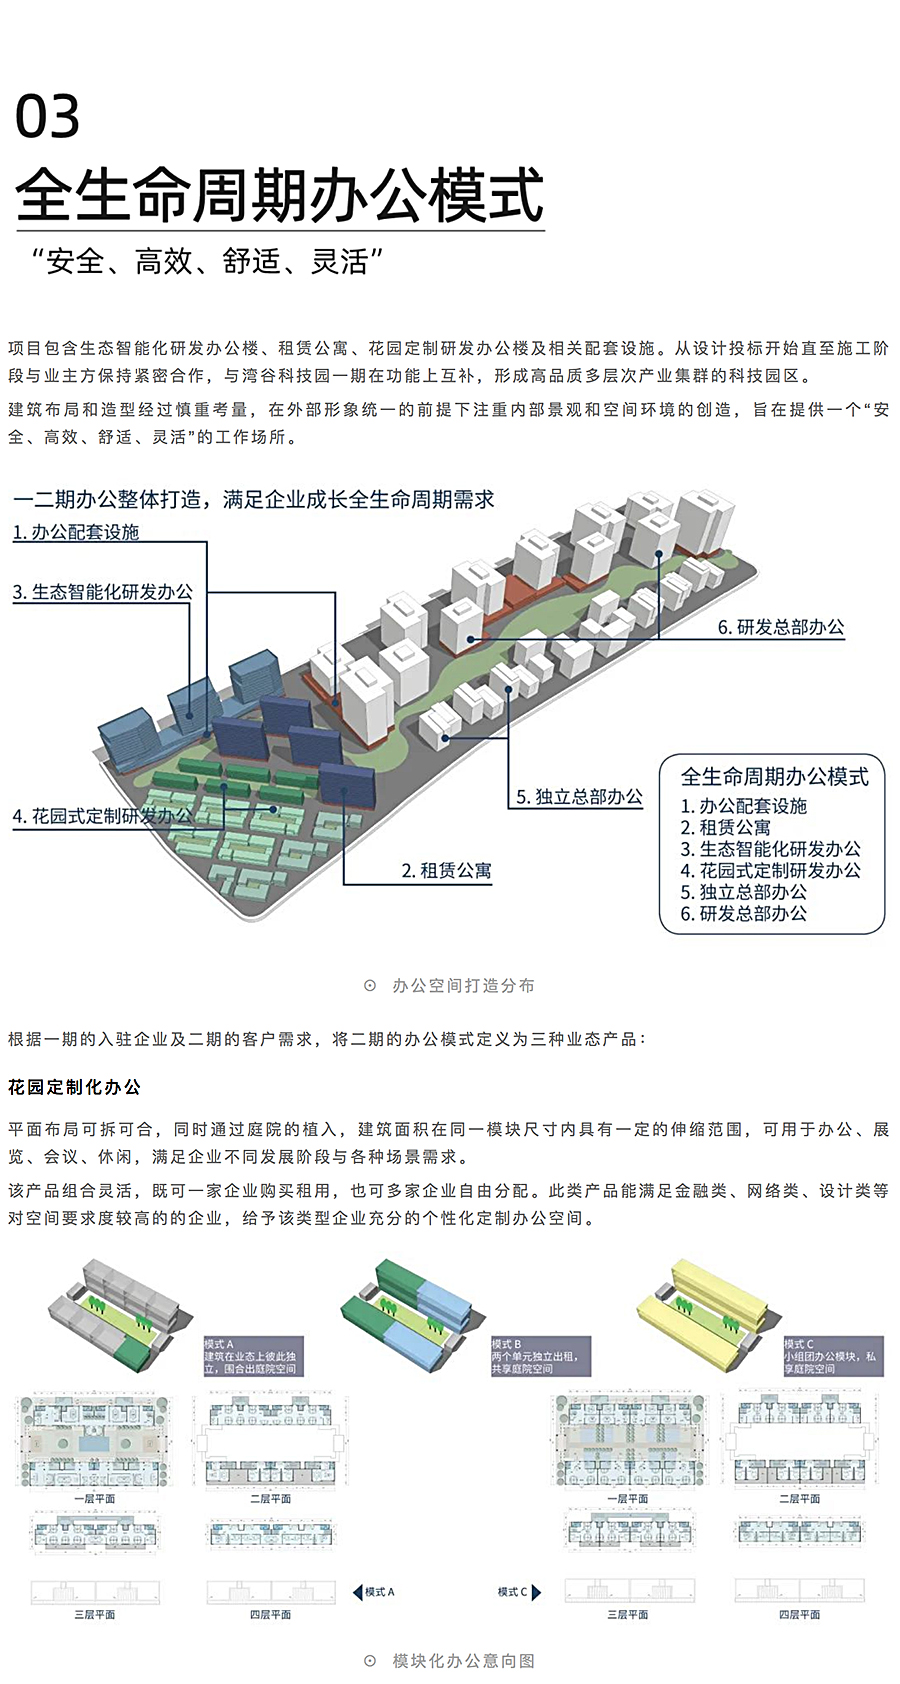 上海城投湾谷科技园二期_0004_图层-5.jpg